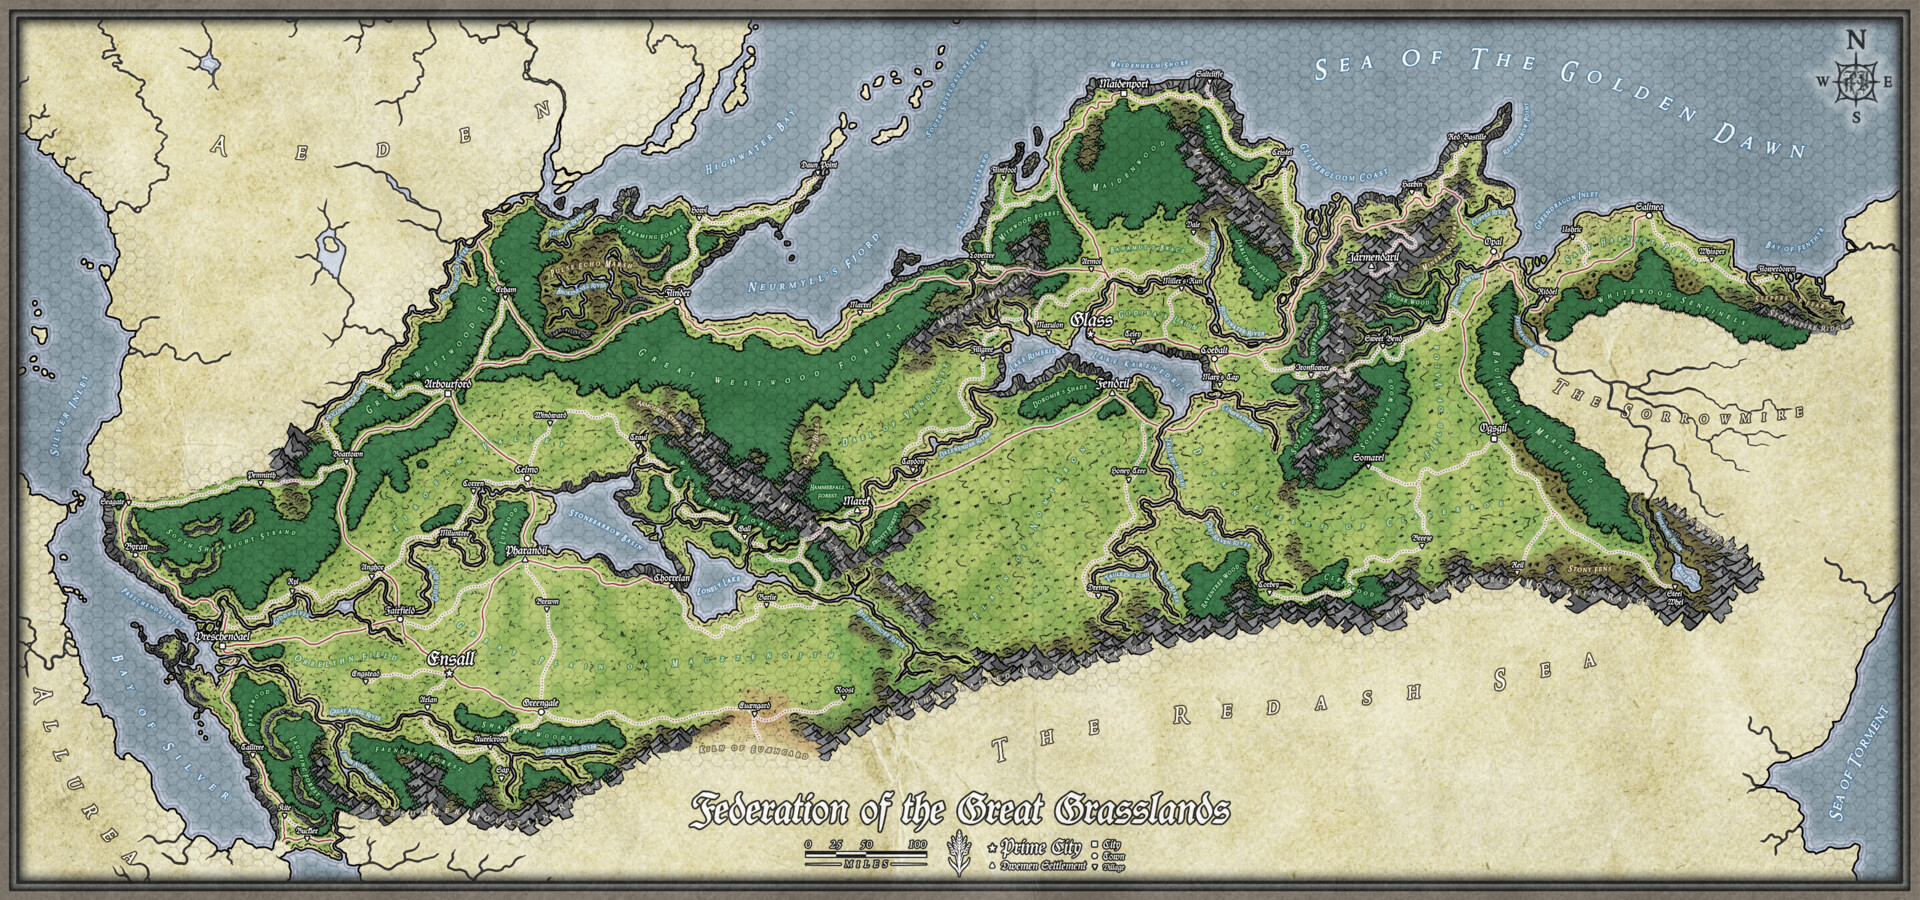 ArtStation - Maps of the Grasslands